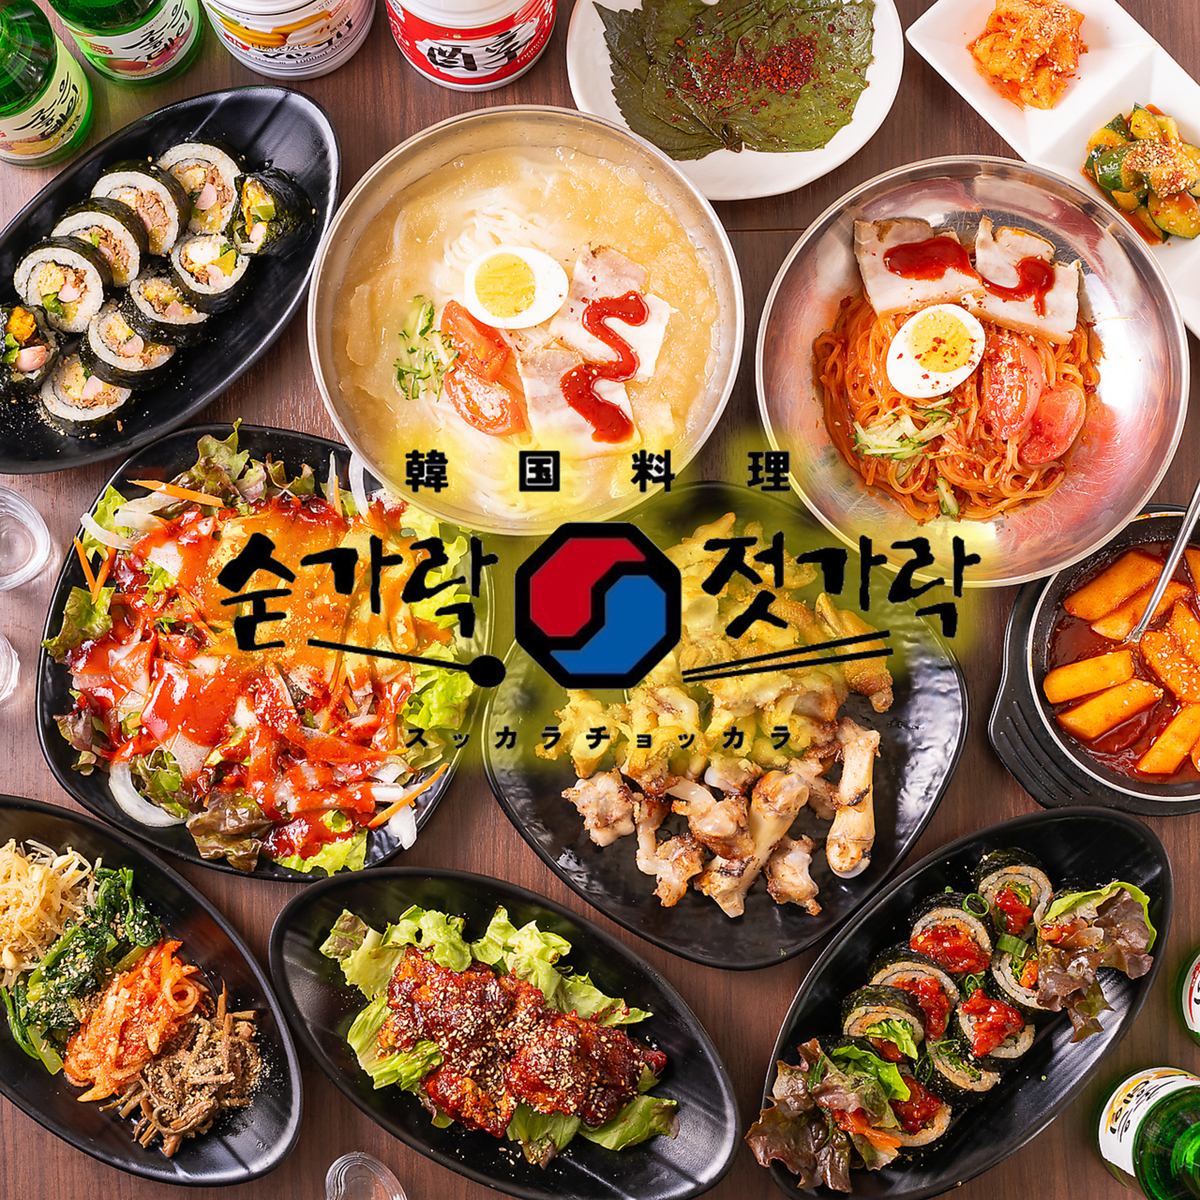 본고장의 한국요리와 다채로운 술을 즐길 수 있는 한국 선술집에서 즐거운 한때를 보내 주세요♪